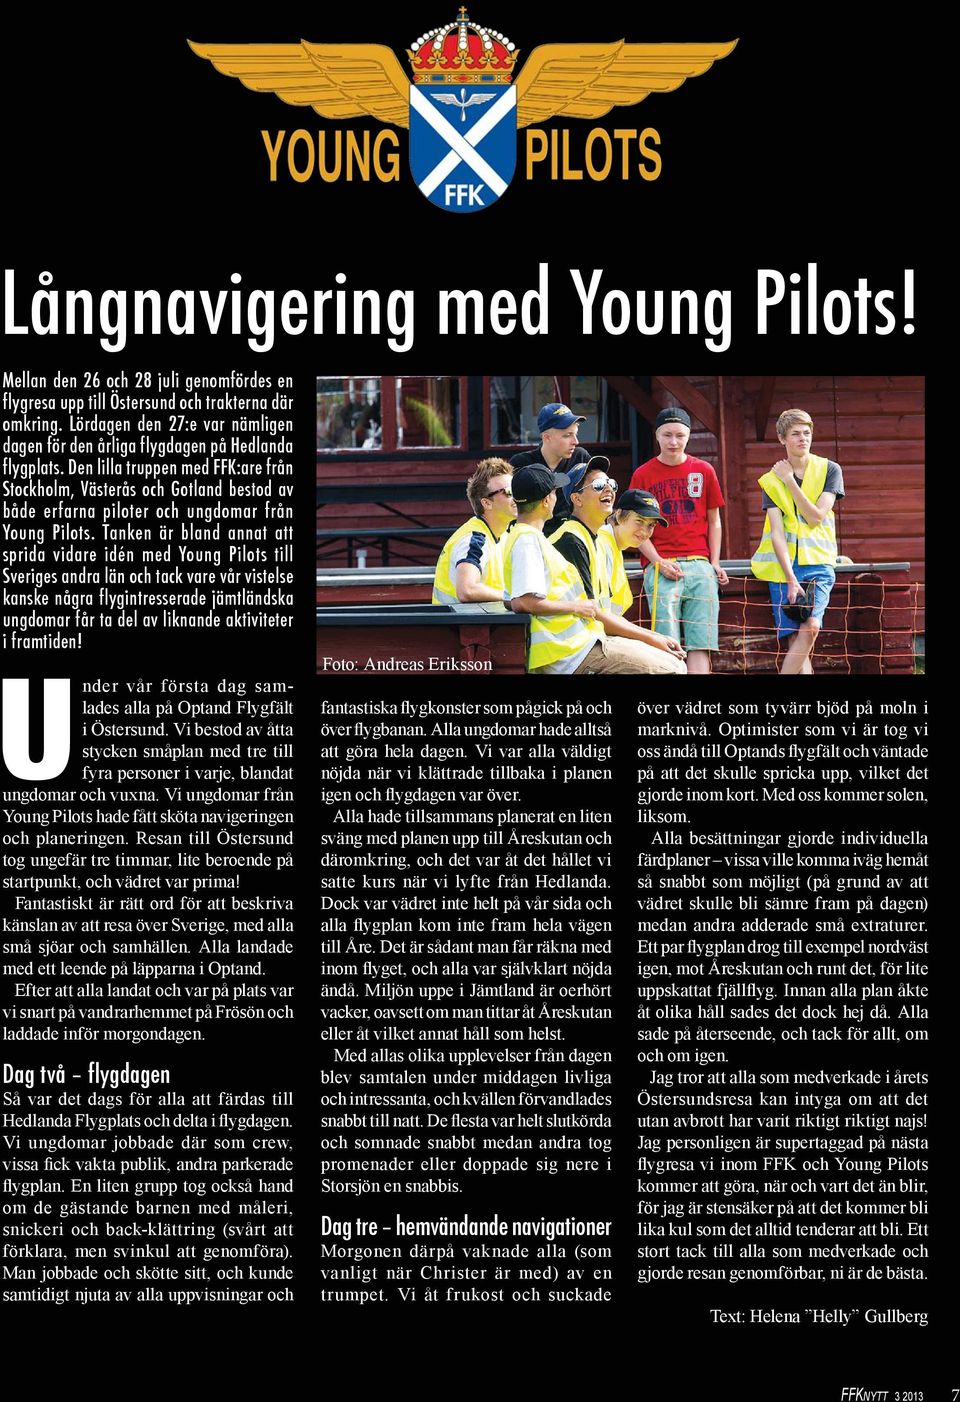 Den lilla truppen med FFK:are från Stockholm, Västerås och Gotland bestod av både erfarna piloter och ungdomar från Young Pilots.